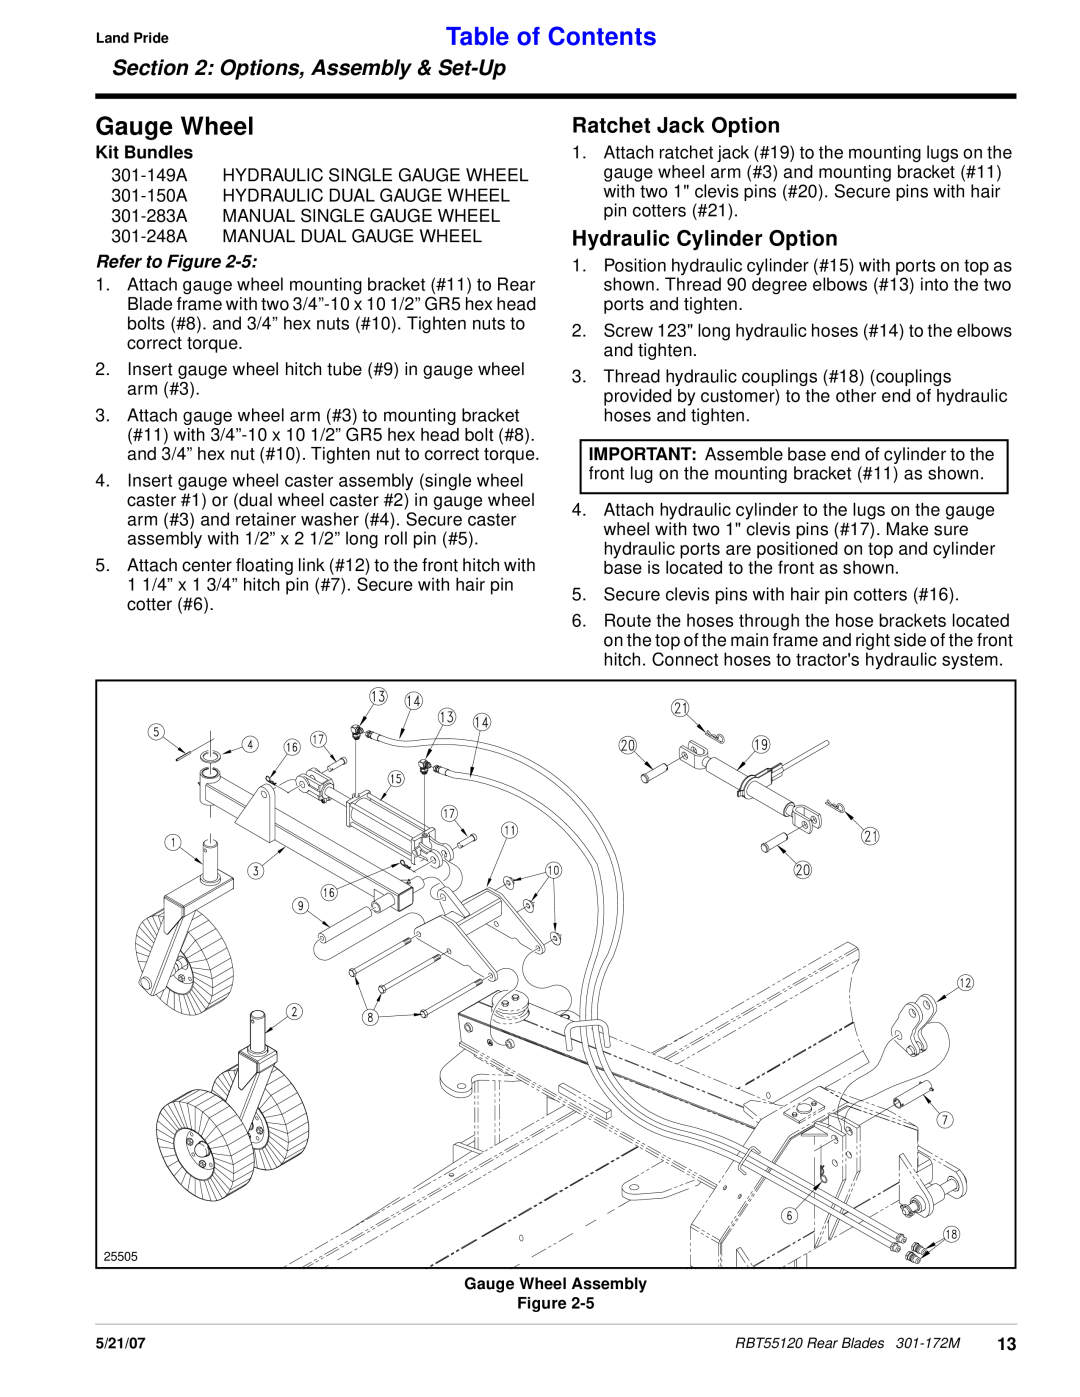 Land Pride RBT55120 manual Gauge Wheel, Ratchet Jack Option, Hydraulic Cylinder Option, Kit Bundles, Table of Contents 